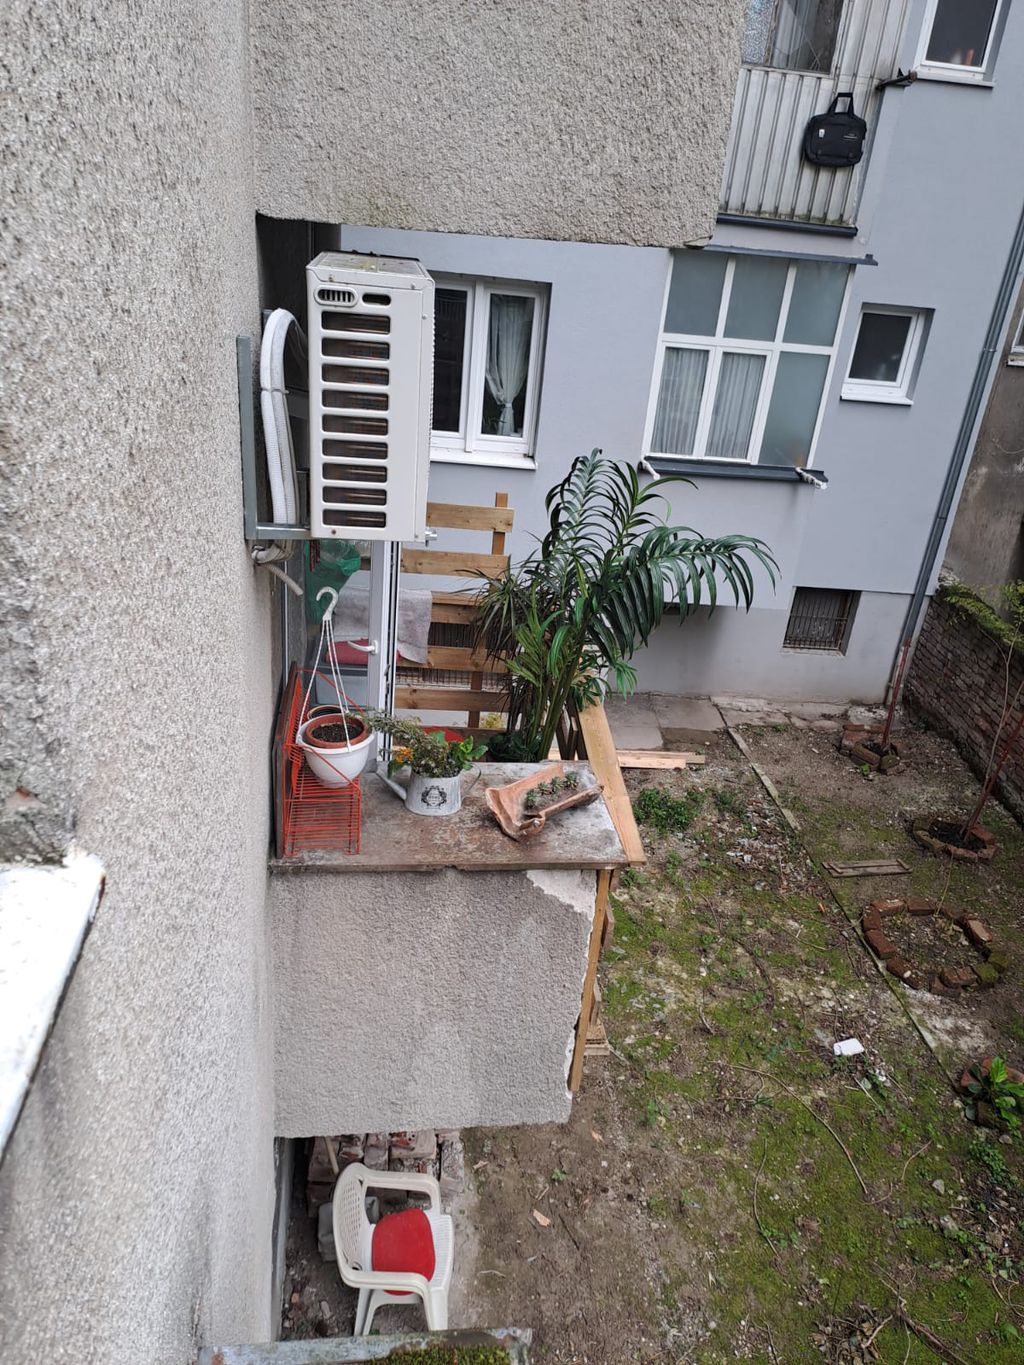 Uklonjena nadogradnja balkona u Zagrebu - 1